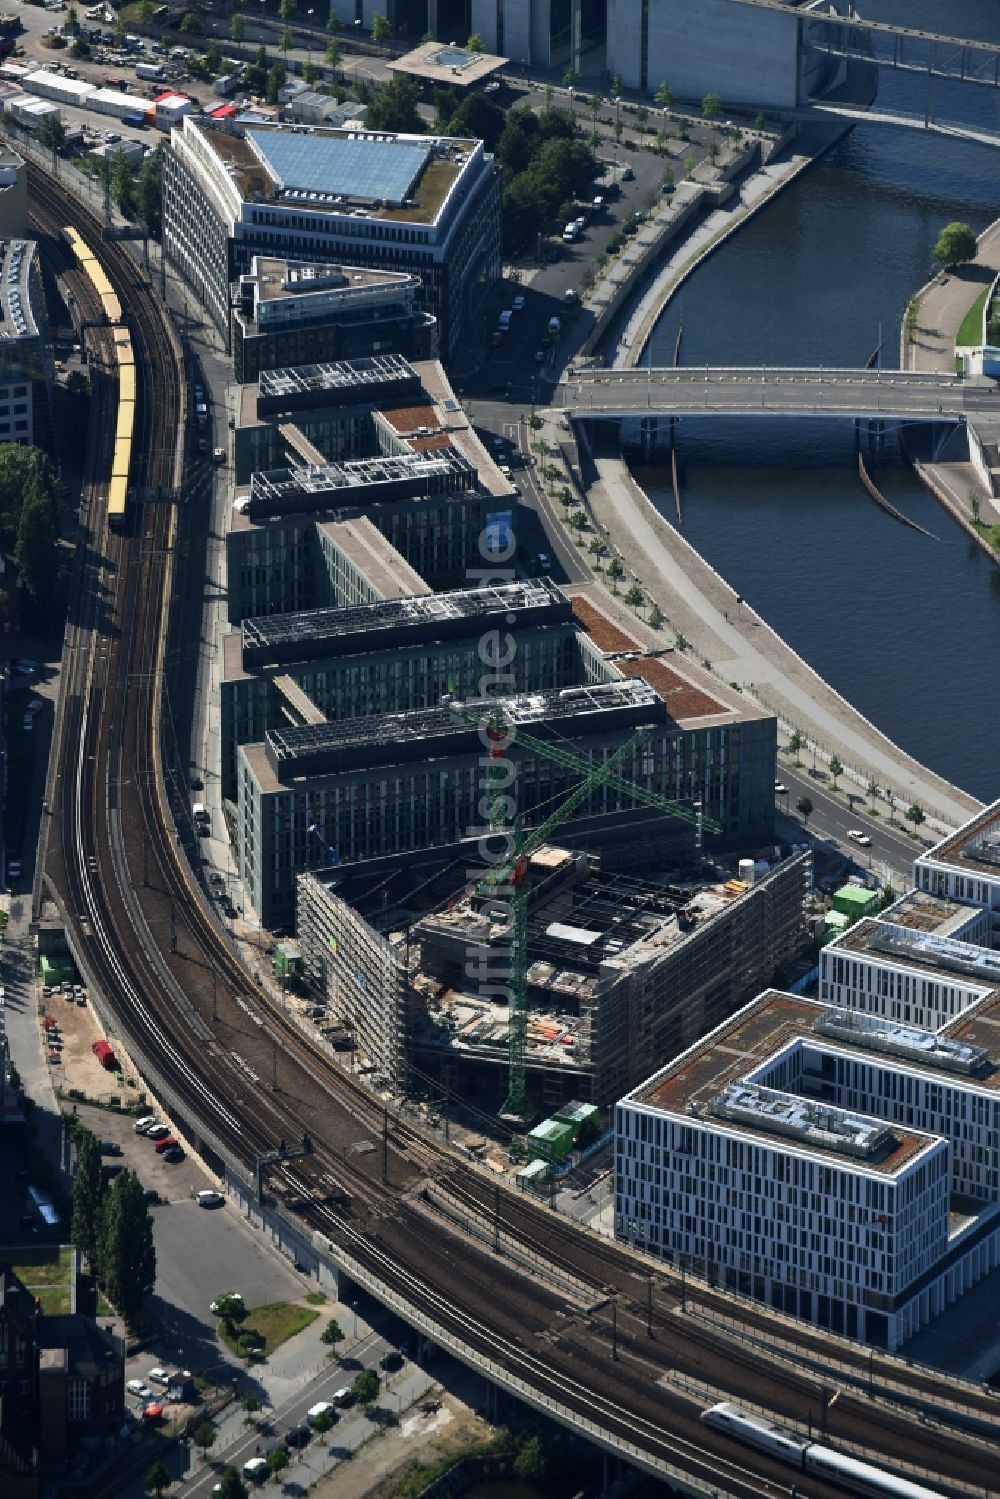 Berlin von oben - Gebäudekomplex des Dienstsitzes des Ministerium für Bildung und Forschung BMBF am Kapelleufer in Berlin